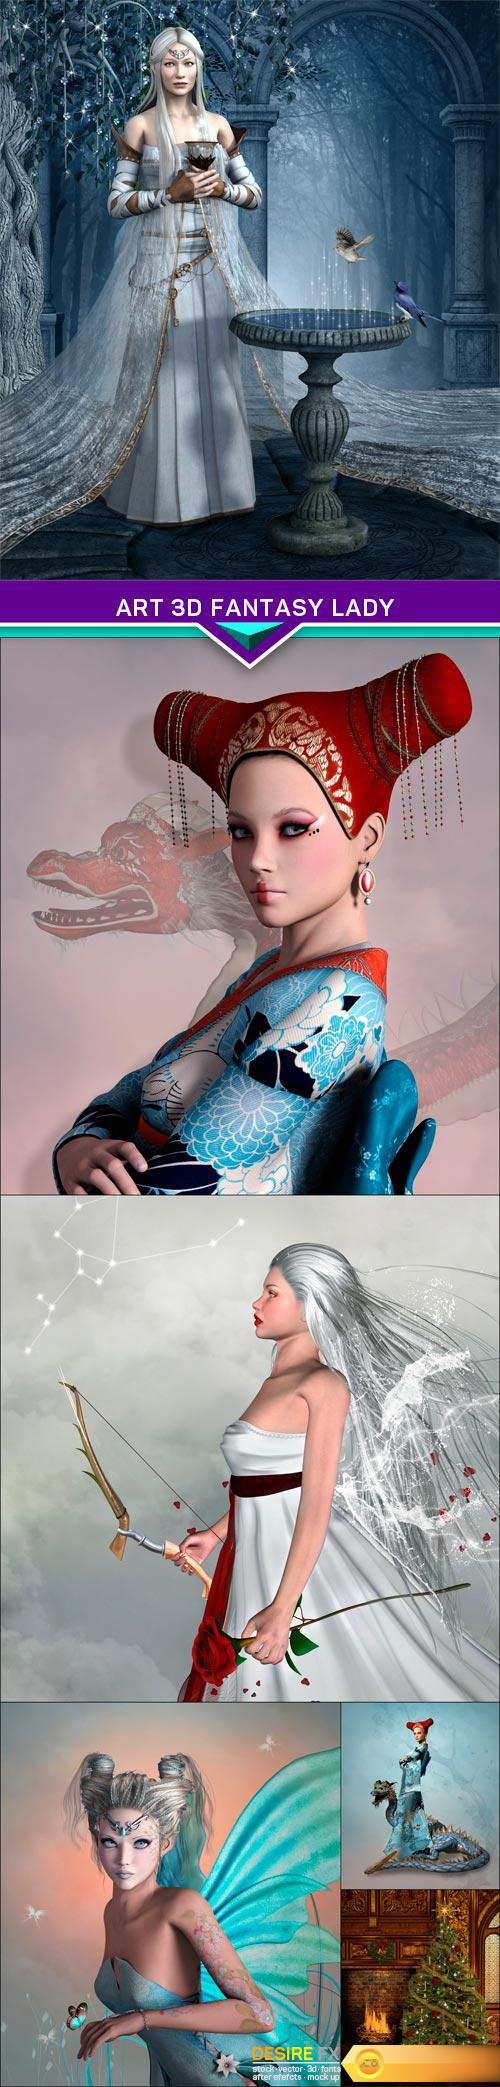 Art 3d fantasy lady 6X JPEG